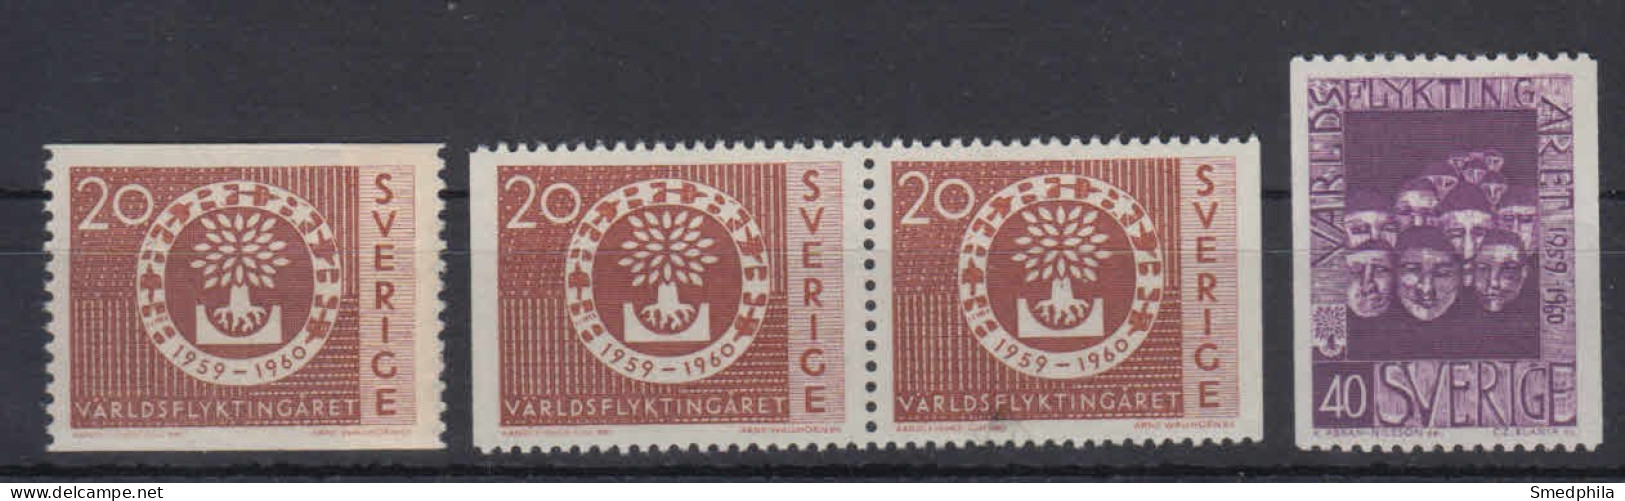 Sweden 1960 - Michel 457-458 MNH ** - Ongebruikt